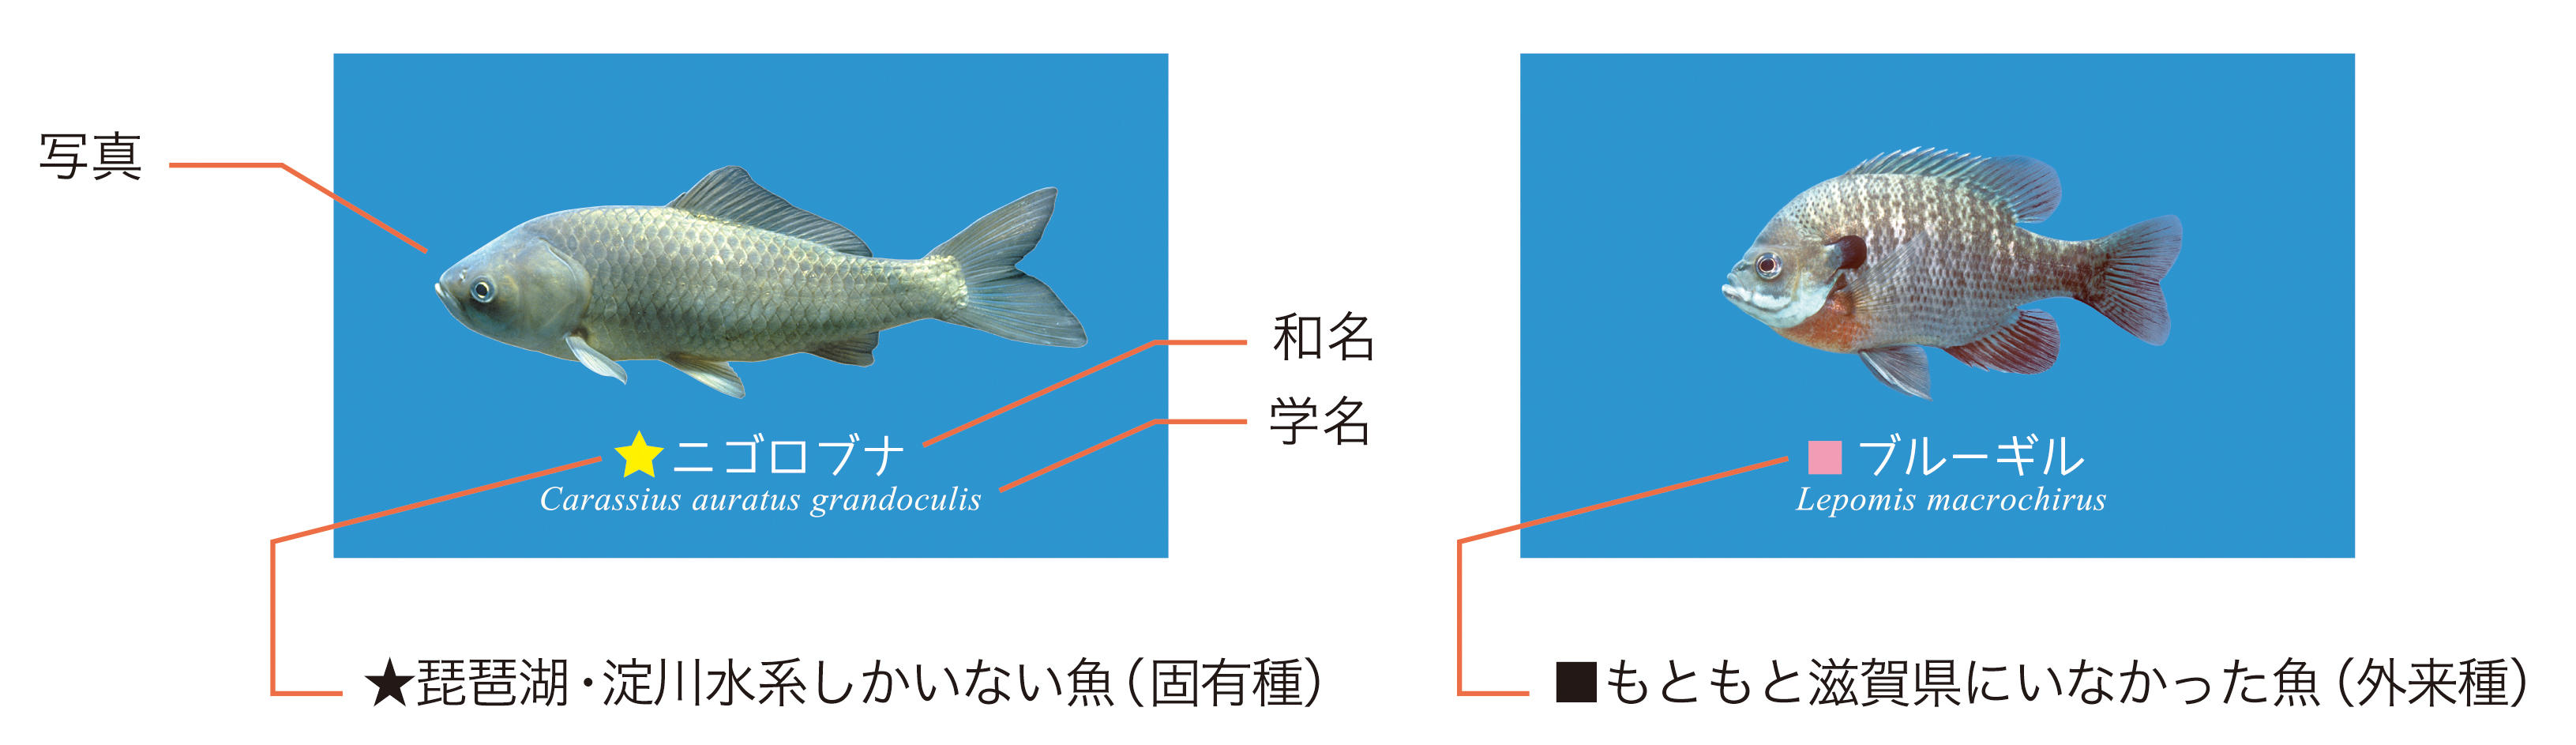 滋賀のお魚ヨシノート を発売 ニュース ニュースルーム コクヨ